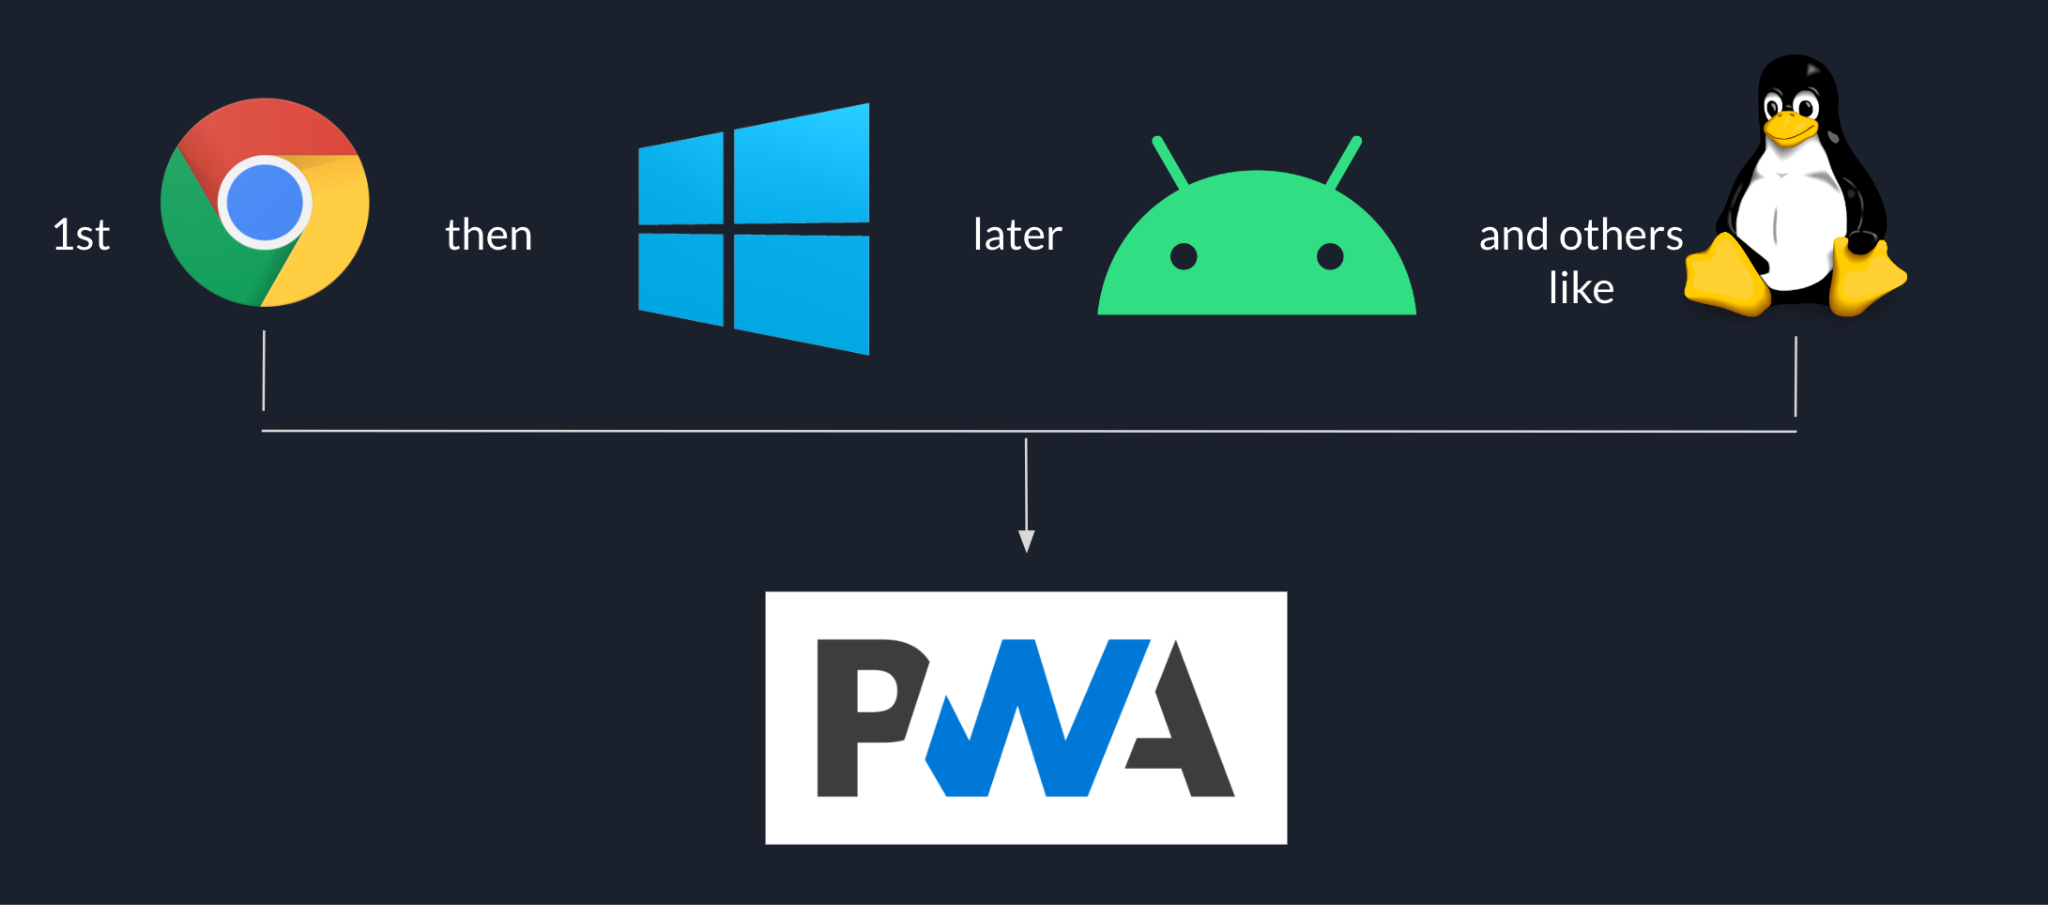 يبدأ تسلسل طرح Goodnotes من خلال متصفّح Chrome ثم نظام التشغيل Windows متبوعًا بنظام التشغيل Android والأنظمة الأساسية الأخرى مثل Linux في النهاية، وذلك استنادًا إلى تطبيق الويب التقدّمي (PWA).